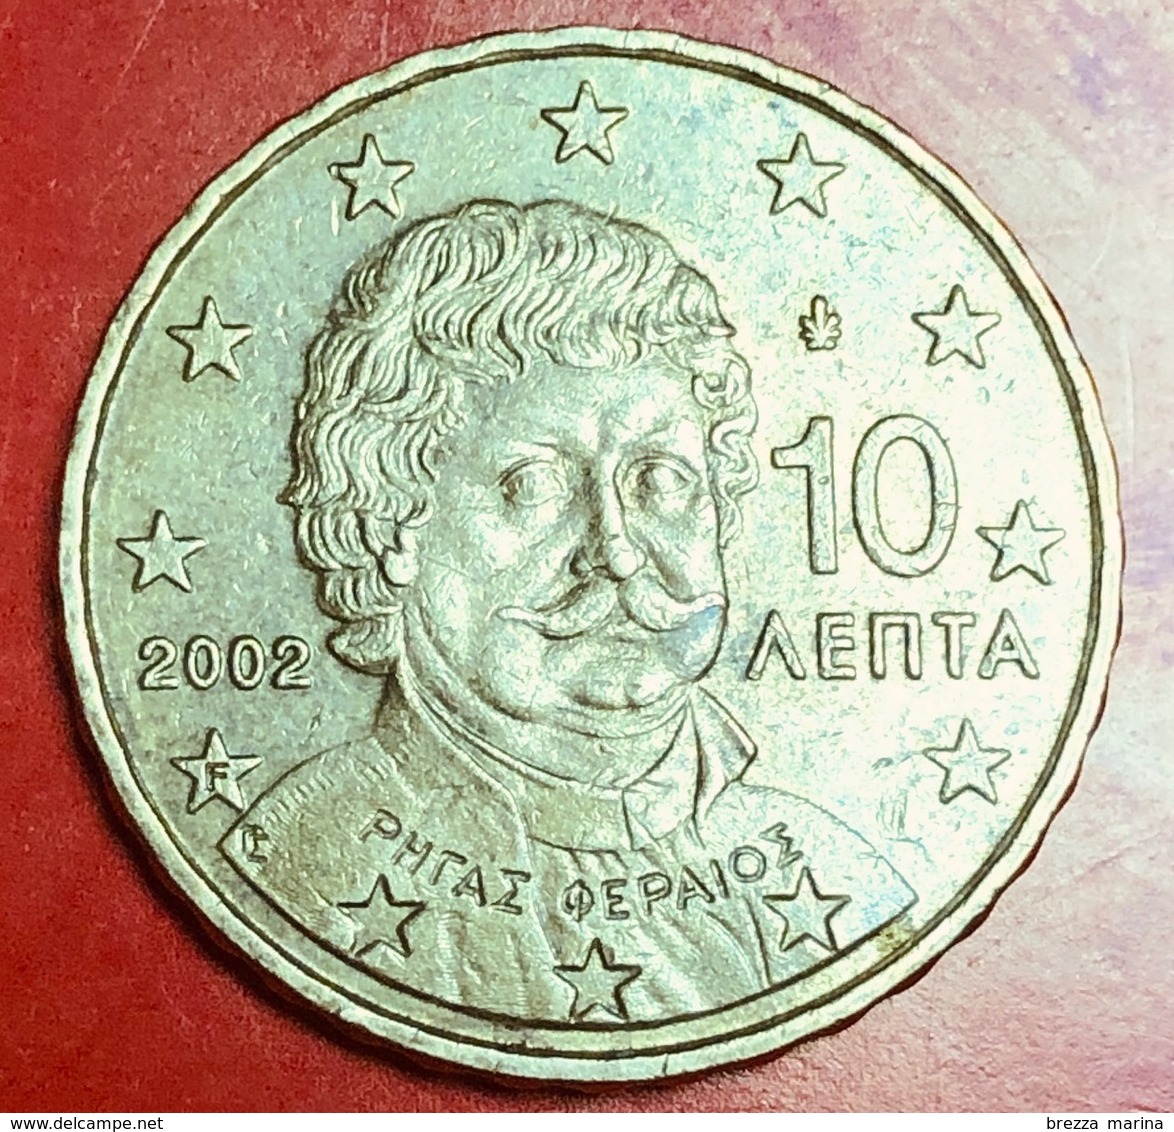 GRECIA - 2002 - Moneta - Ritratto Di Rigas Fereos-Velestinlis (1757-1798) - Euro - 0.10 - Grèce